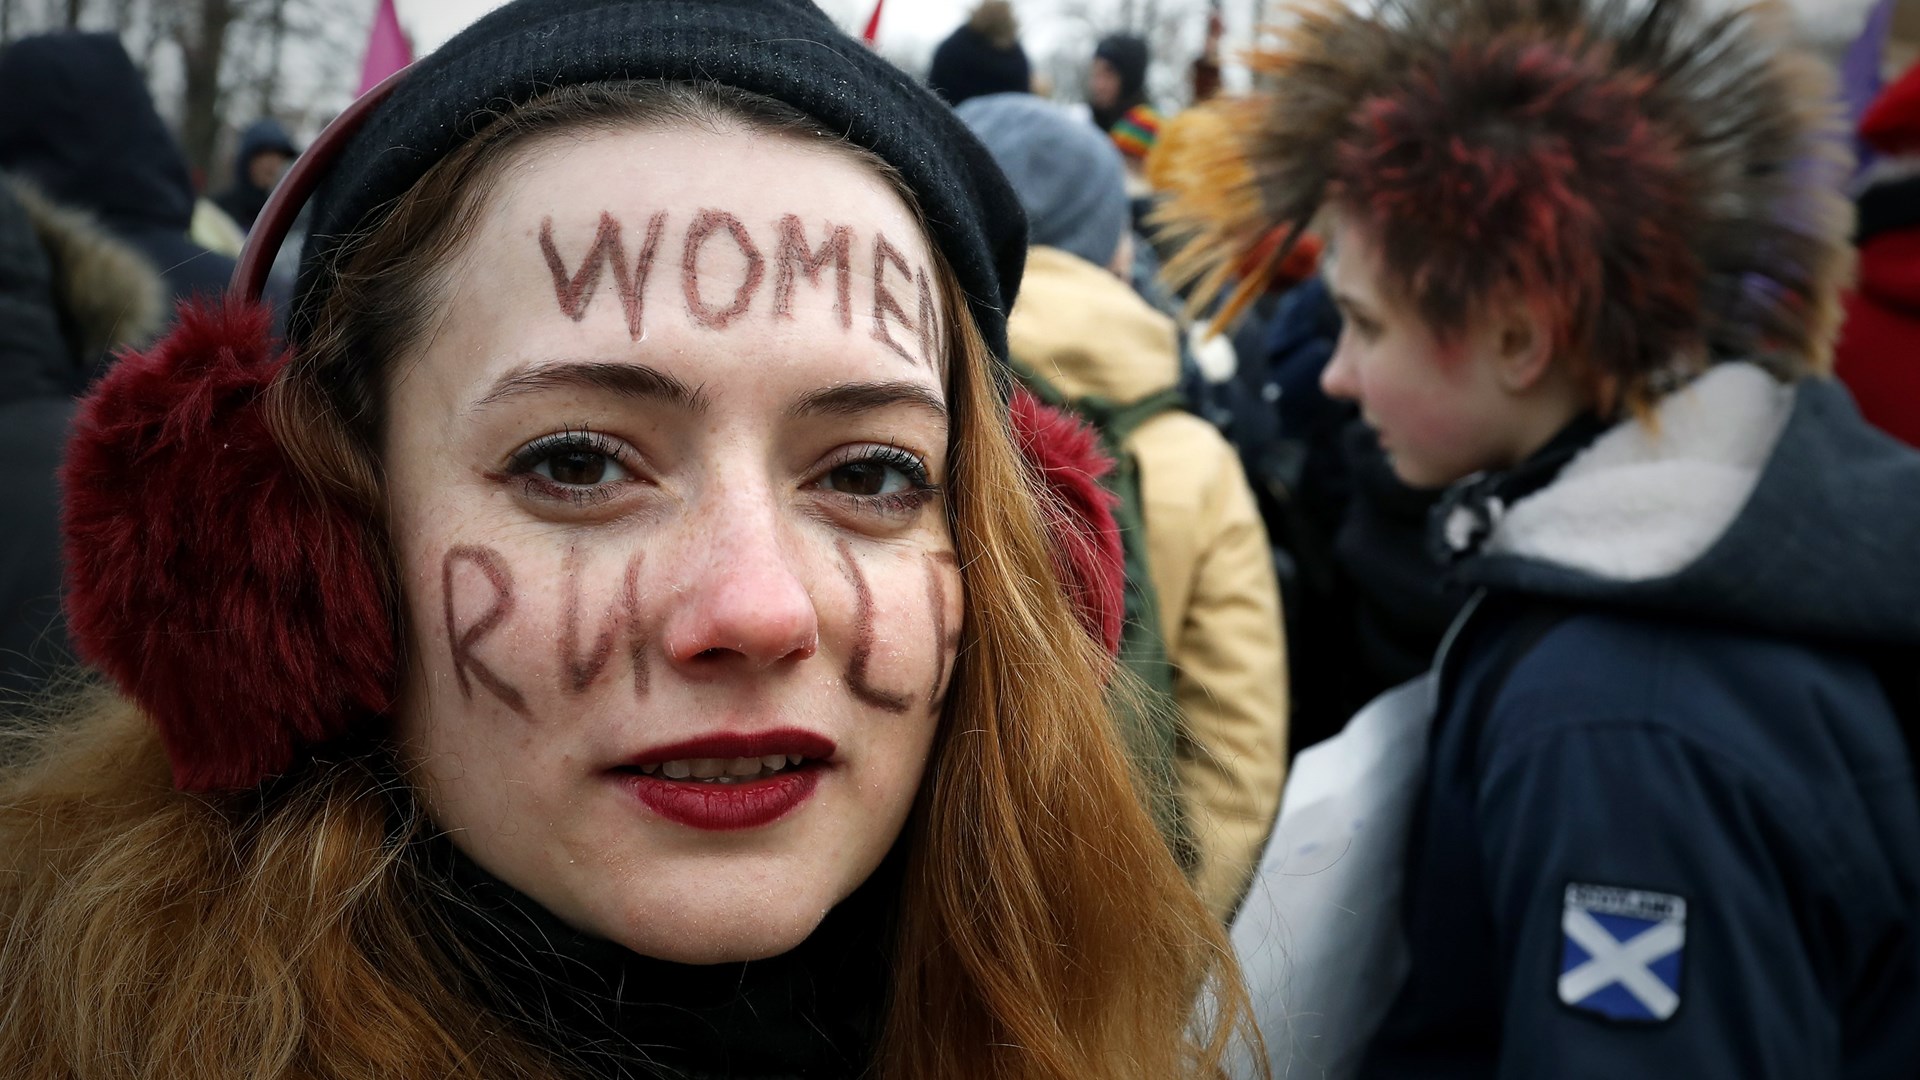 Παγκόσμια Ημέρα της Γυναίκας: Τέσσερις συγκλονιστικές ιστορίες γένους…θηλυκού που έσπασαν το “άβατο” των ανδρών